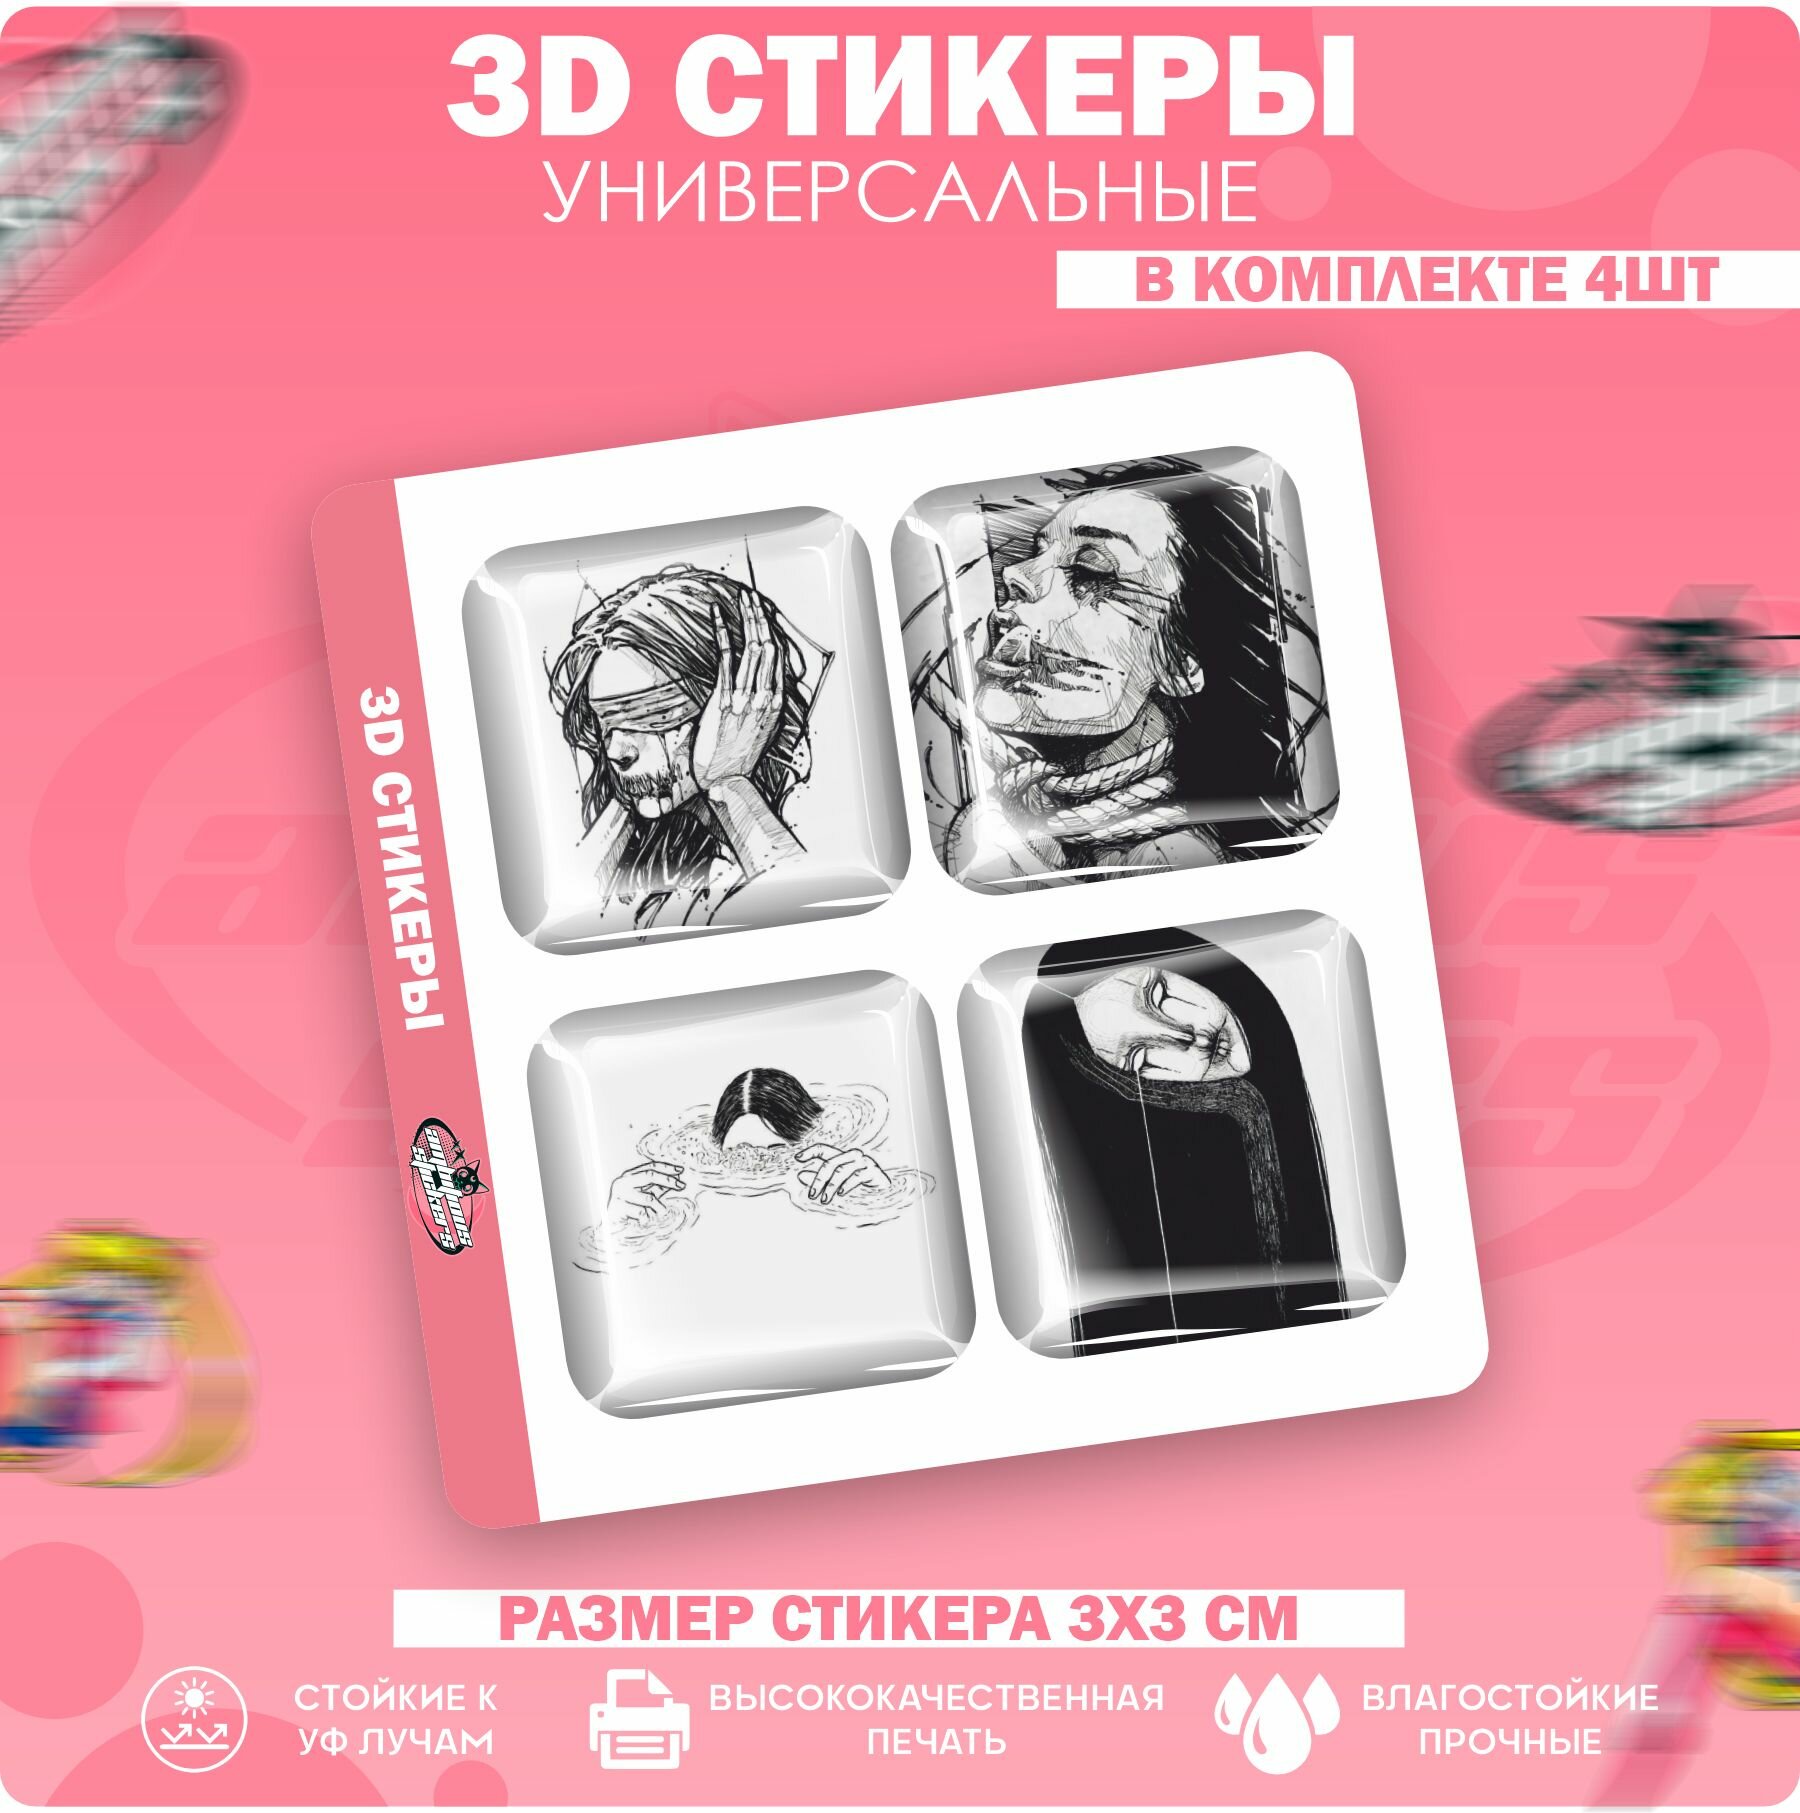 3D стикеры наклейки на телефон девушка чб в депрессии